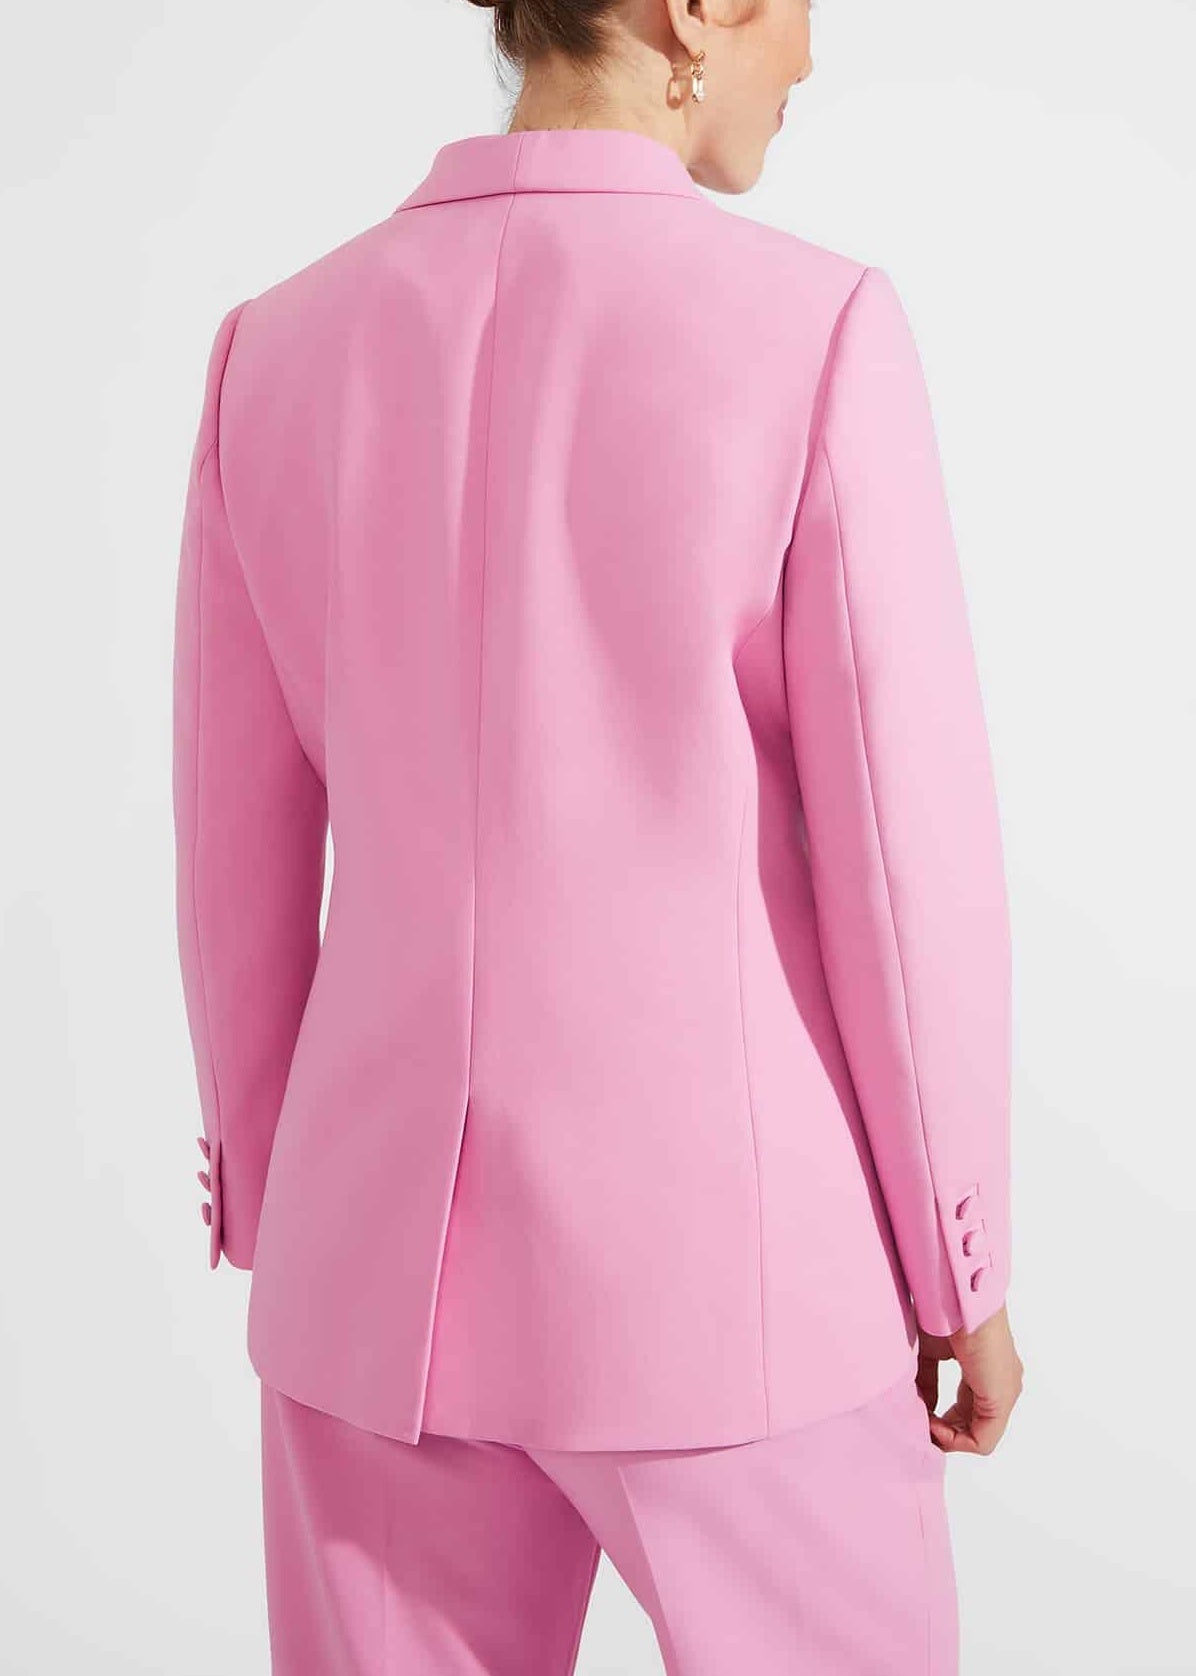 Felicity Jacket 0124/4914/9845l00 Carnation-Pink